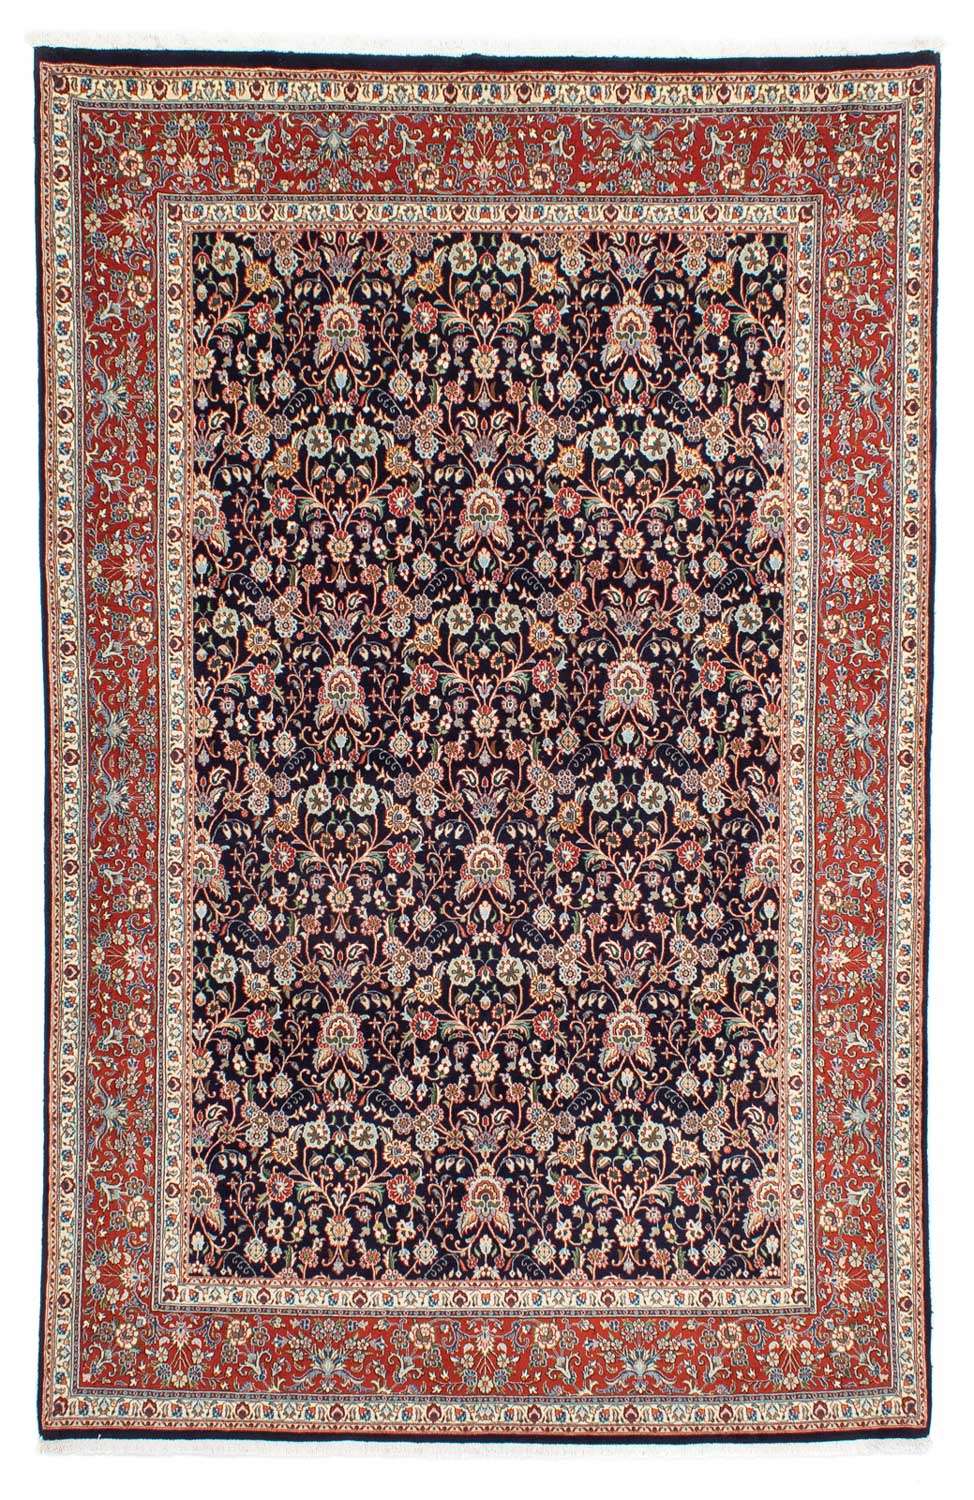 Persisk teppe - klassisk - 283 x 196 cm - svart